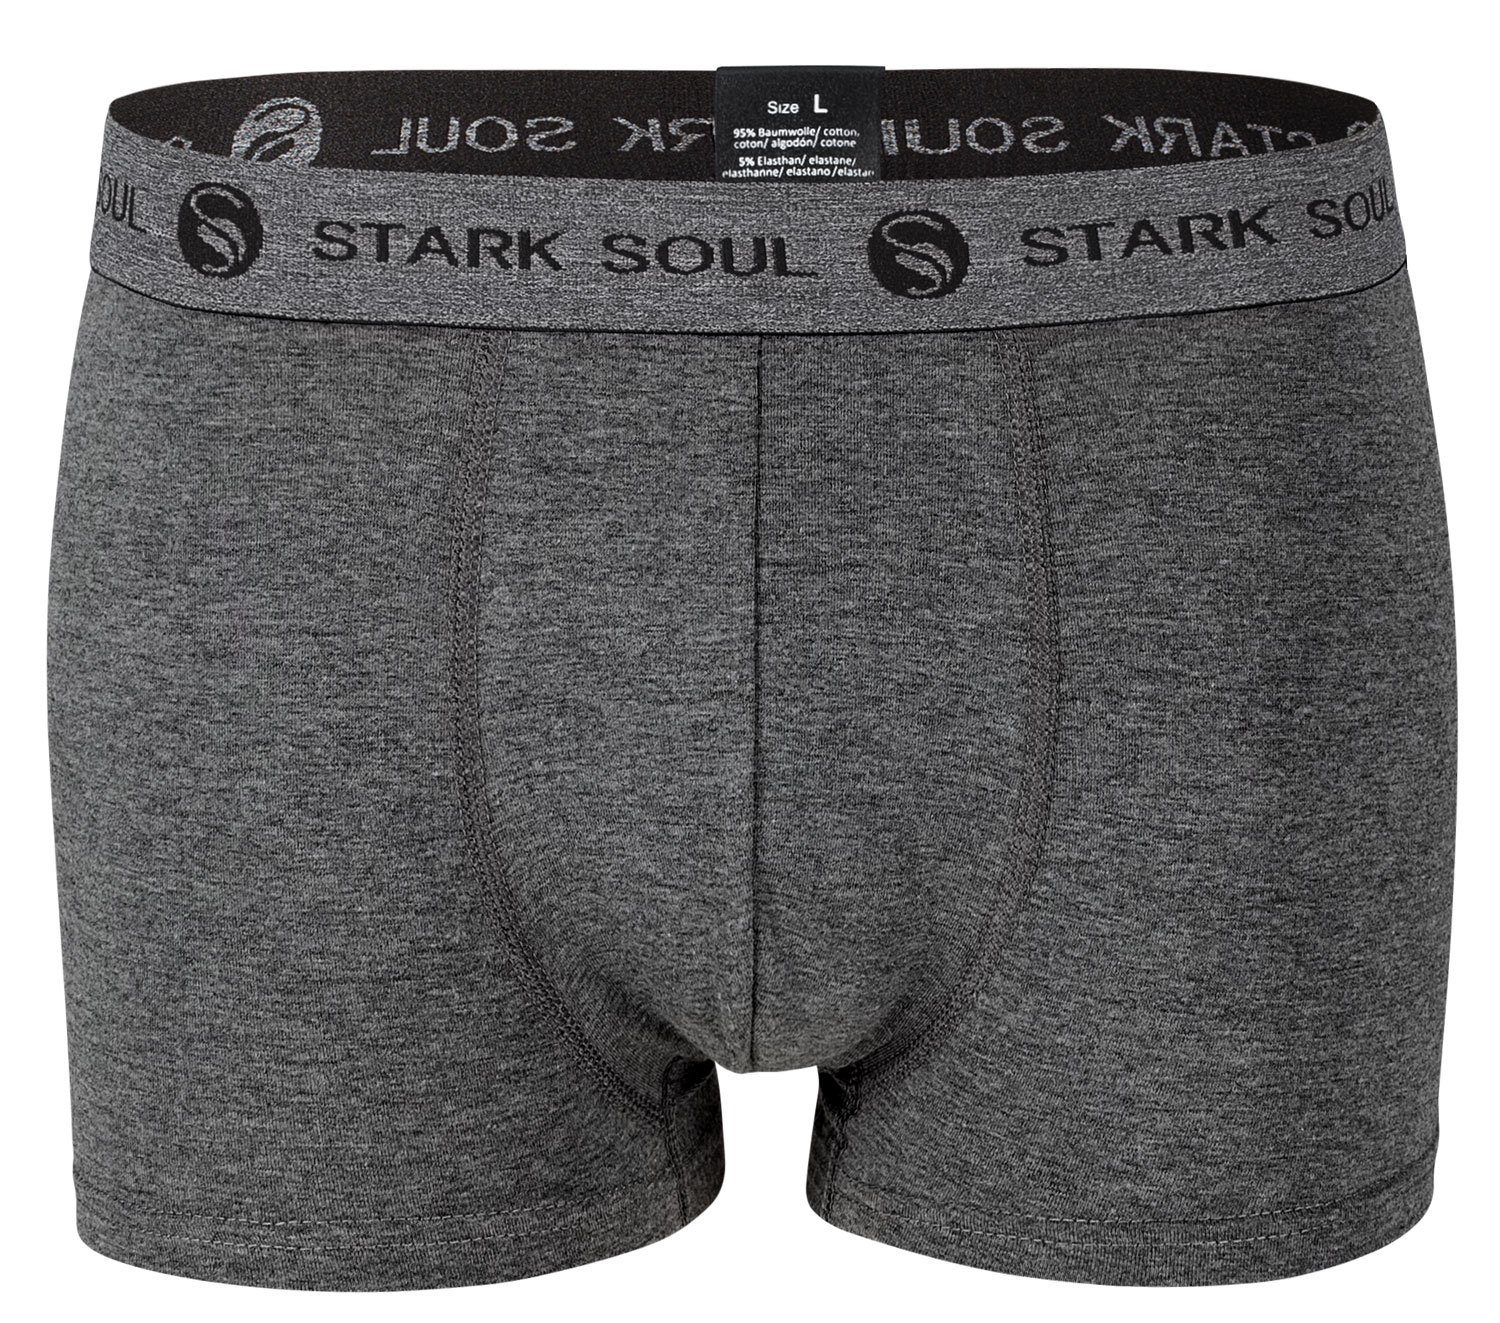 Stark Soul® Boxershorts Hipster 6er-Pack Baumwoll-Unterhosen Pack, Herren im 6er Gemischt-V2 Boxershorts